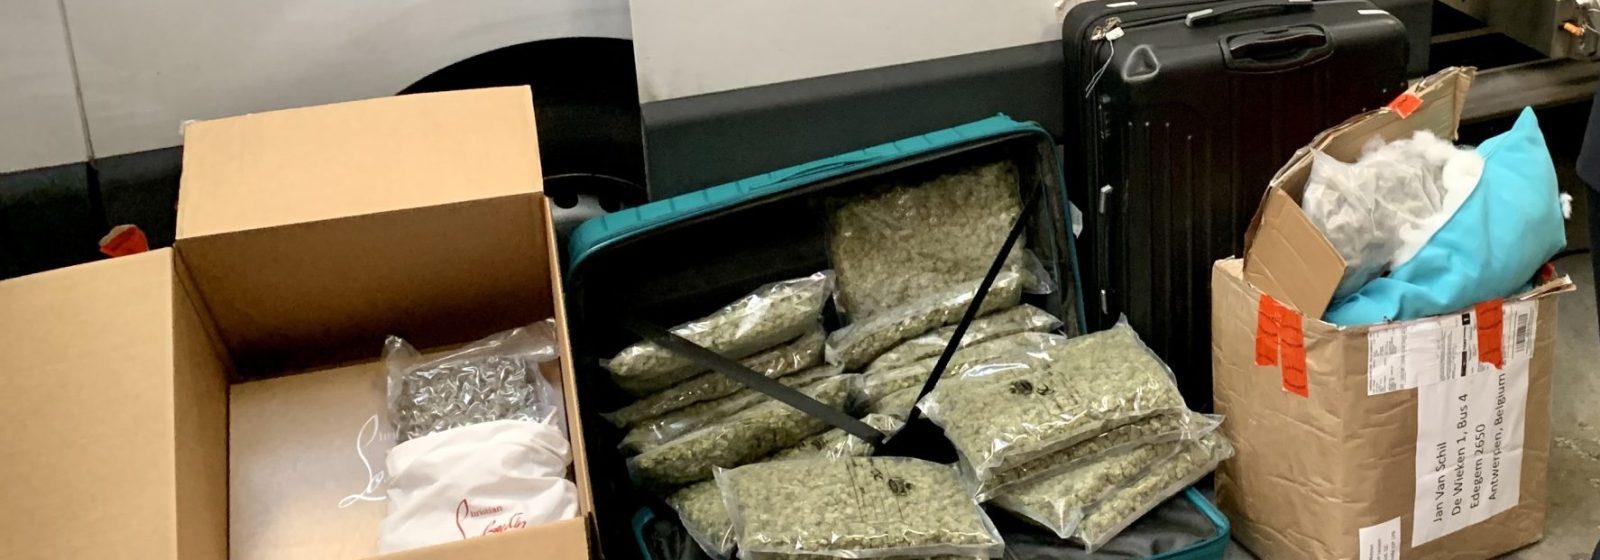 Inbeslaggenomen drugs in post- en koerierszendingen en bagage in Brussels Airport